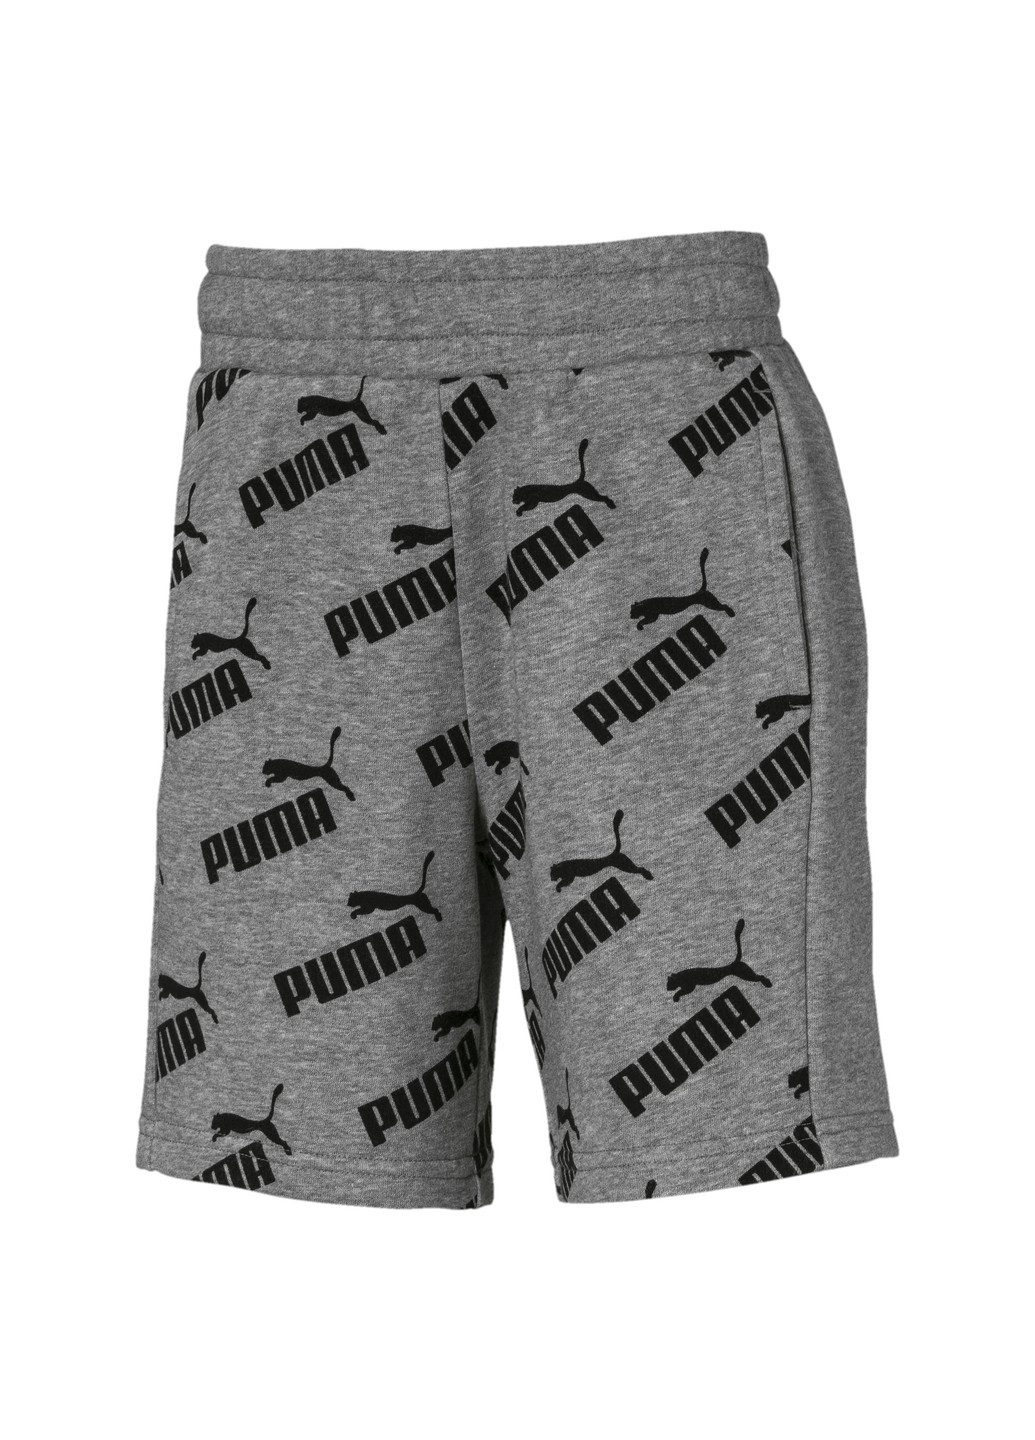 Шорты Amplified Knitted Boys' Shorts Puma однотонные серые спортивные